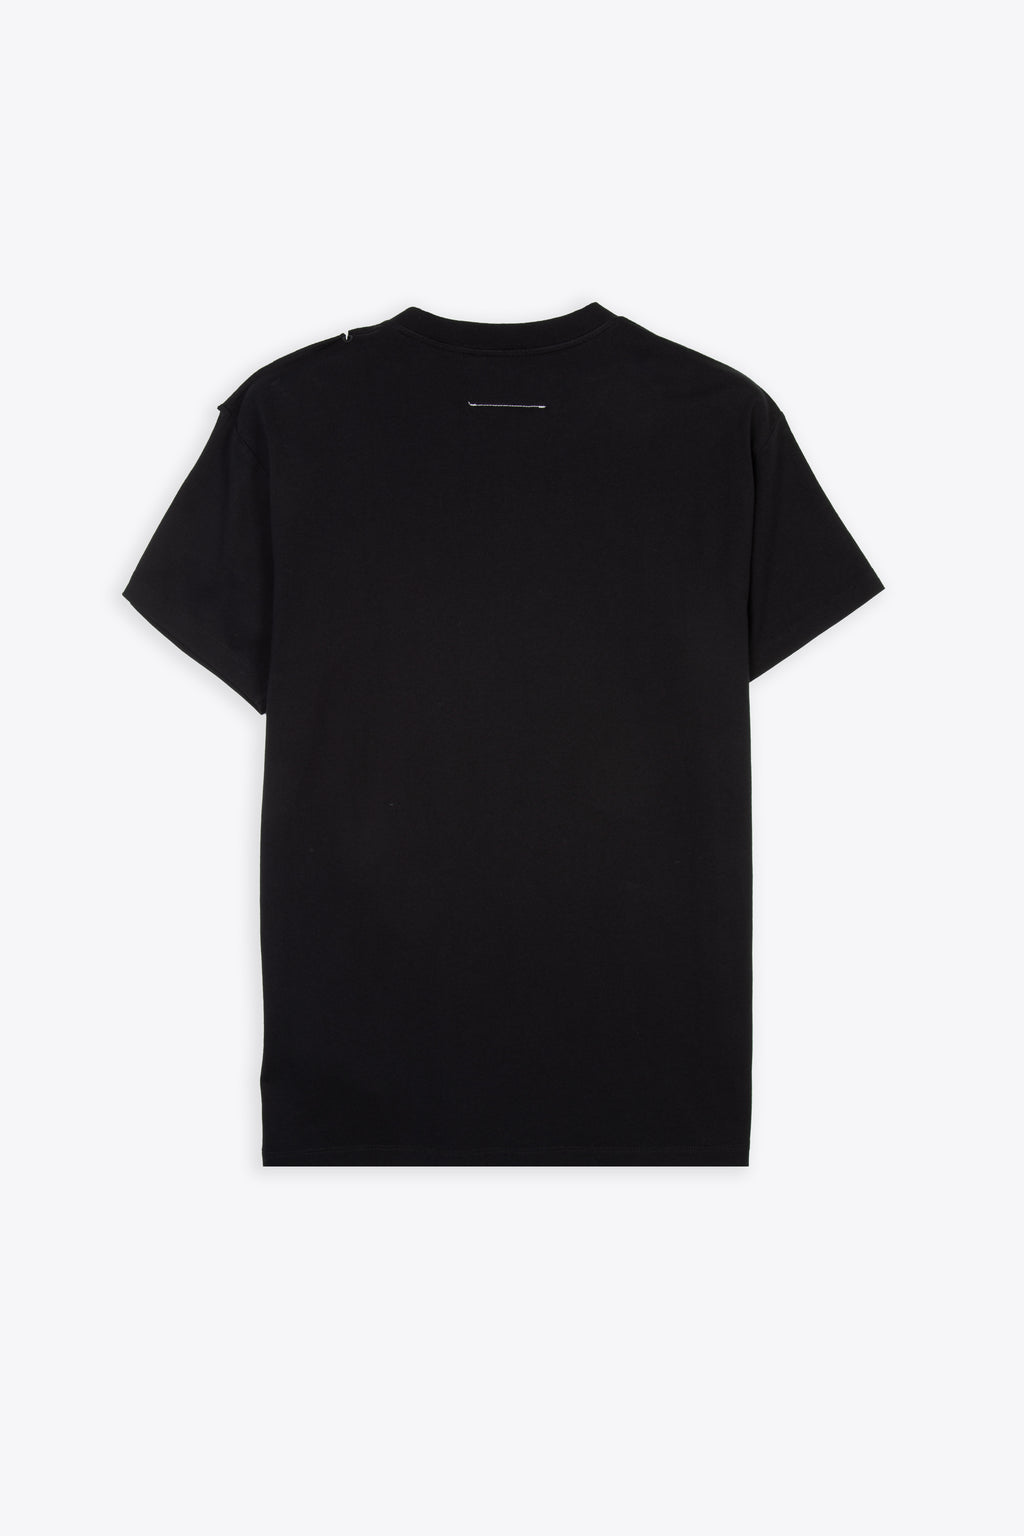 alt-image__Black-cotton-t-shirt-with-open-shoulder-